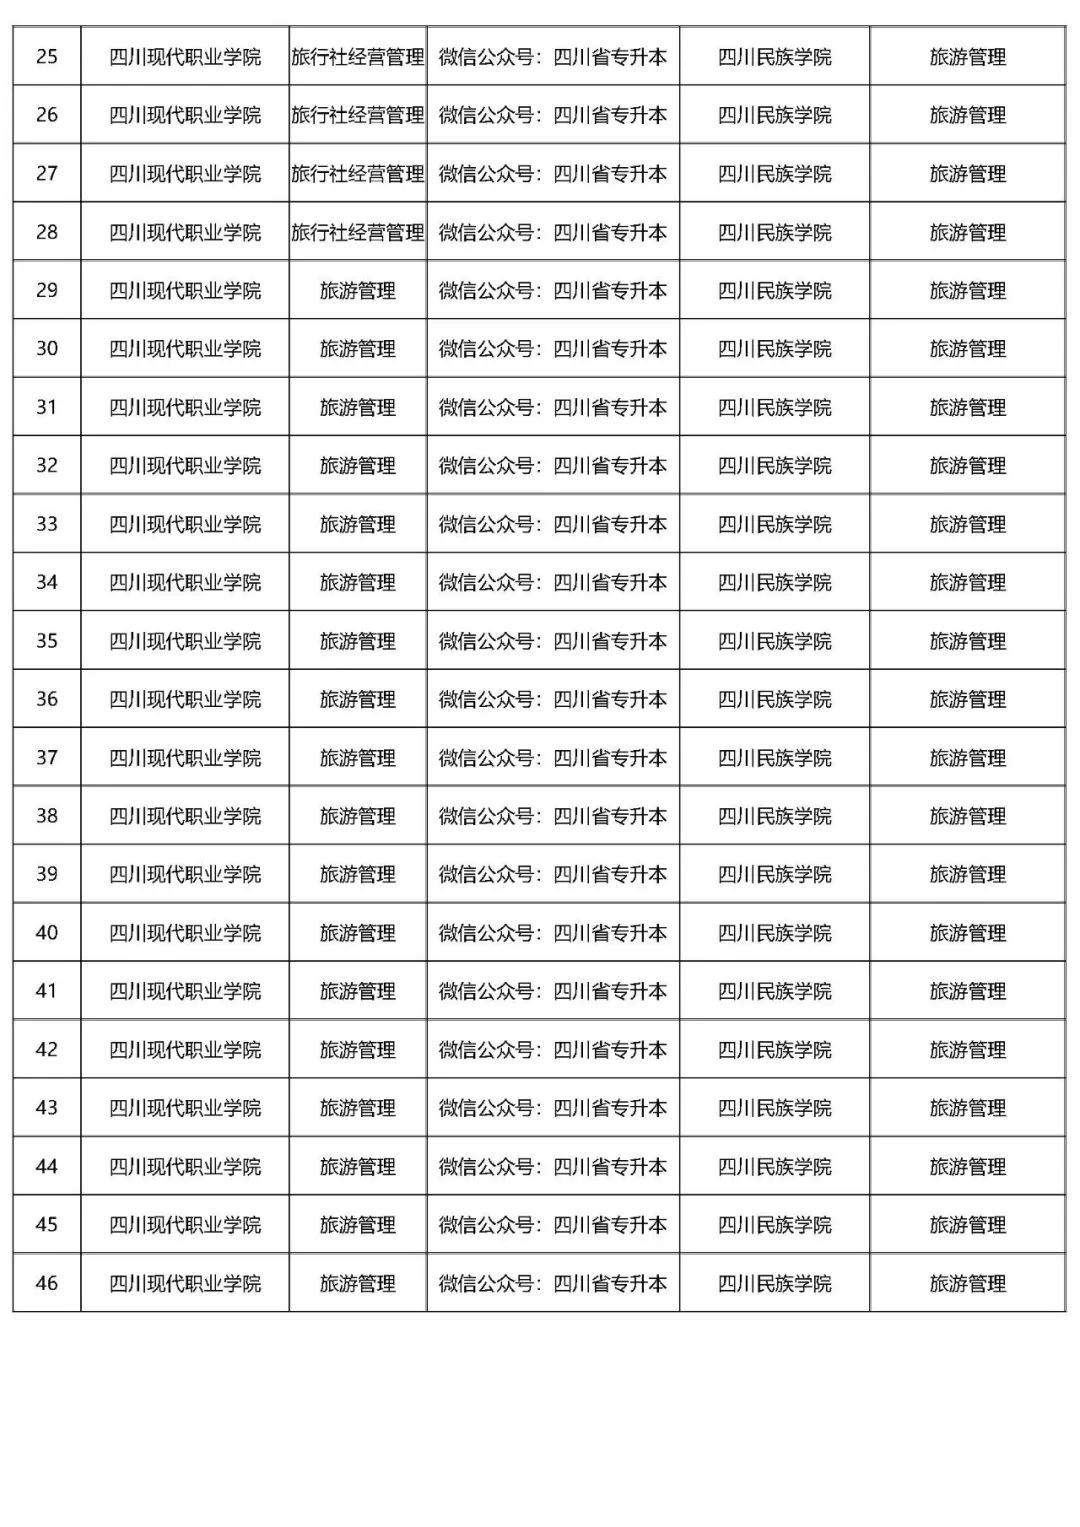 【预录名单】2020四川民族学院